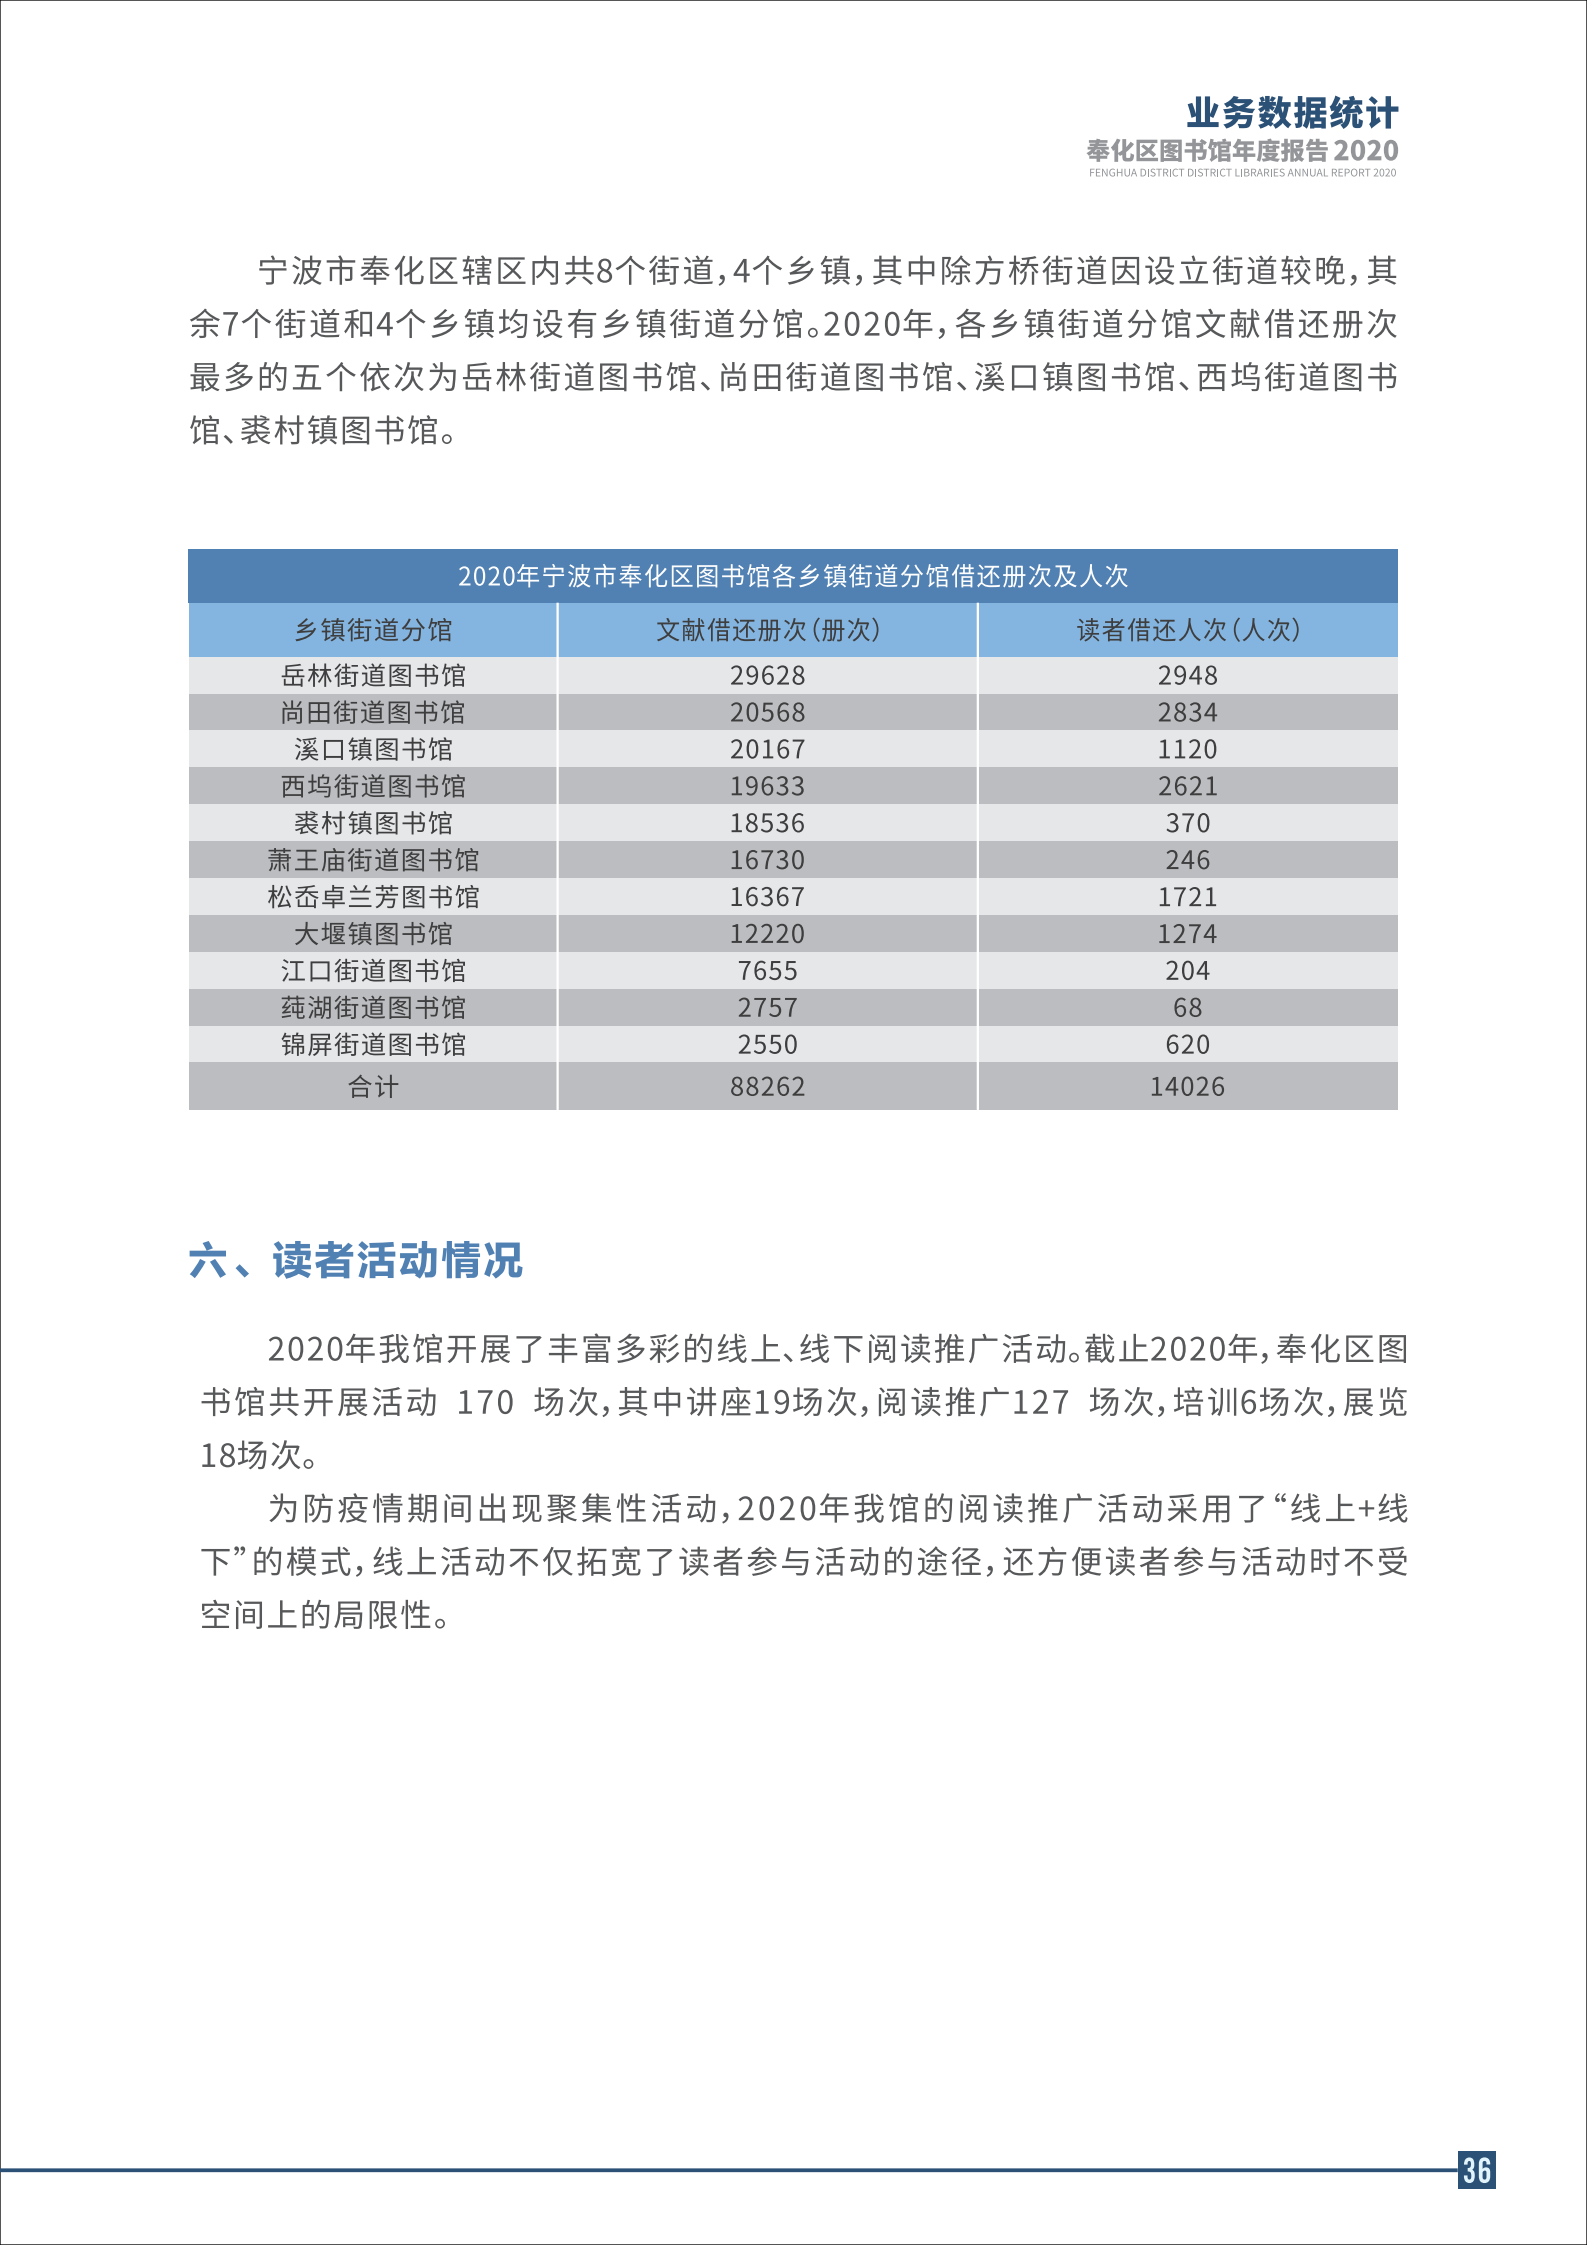 宁波市奉化区图书馆2020年年度报告 终稿_36.png